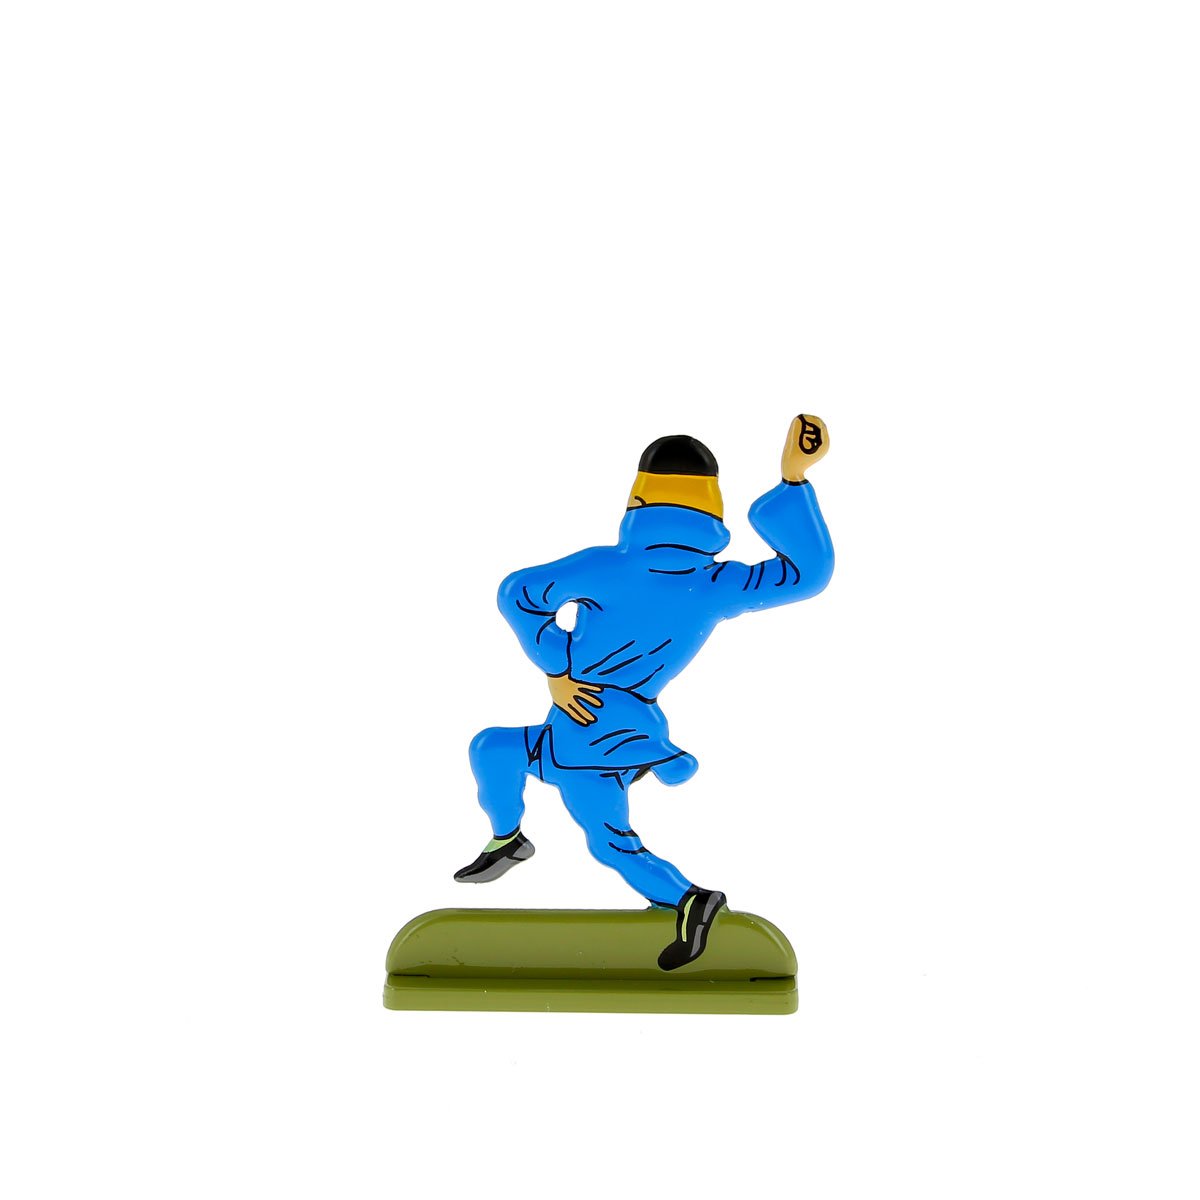 Tintin dancing